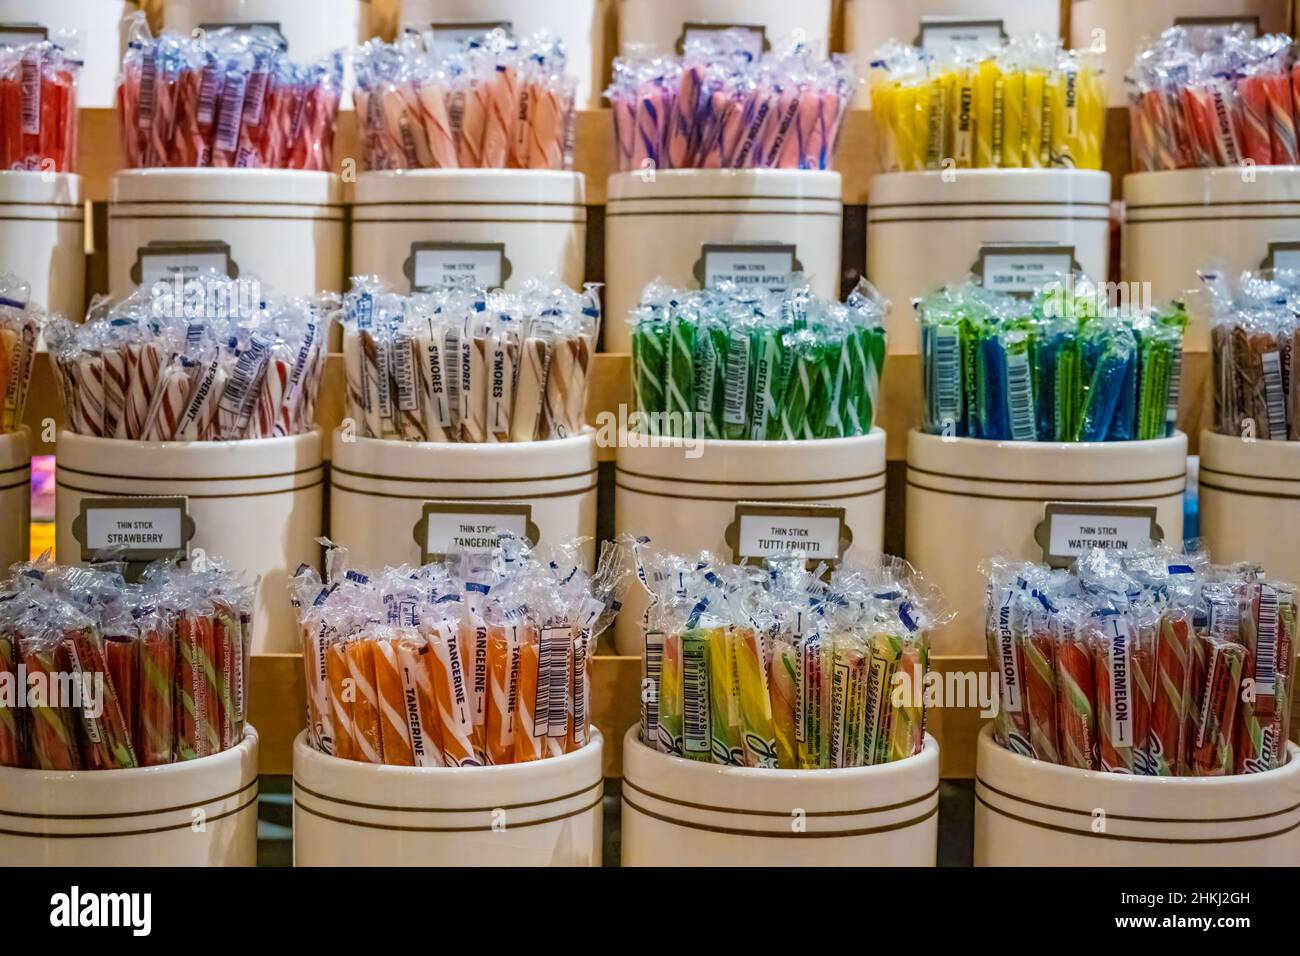 Exposition colorée de bâtonnets de bonbons à l'ancienne au Cracker Barrel Old Country Store de Pell City, Alabama.(ÉTATS-UNIS) Banque D'Images